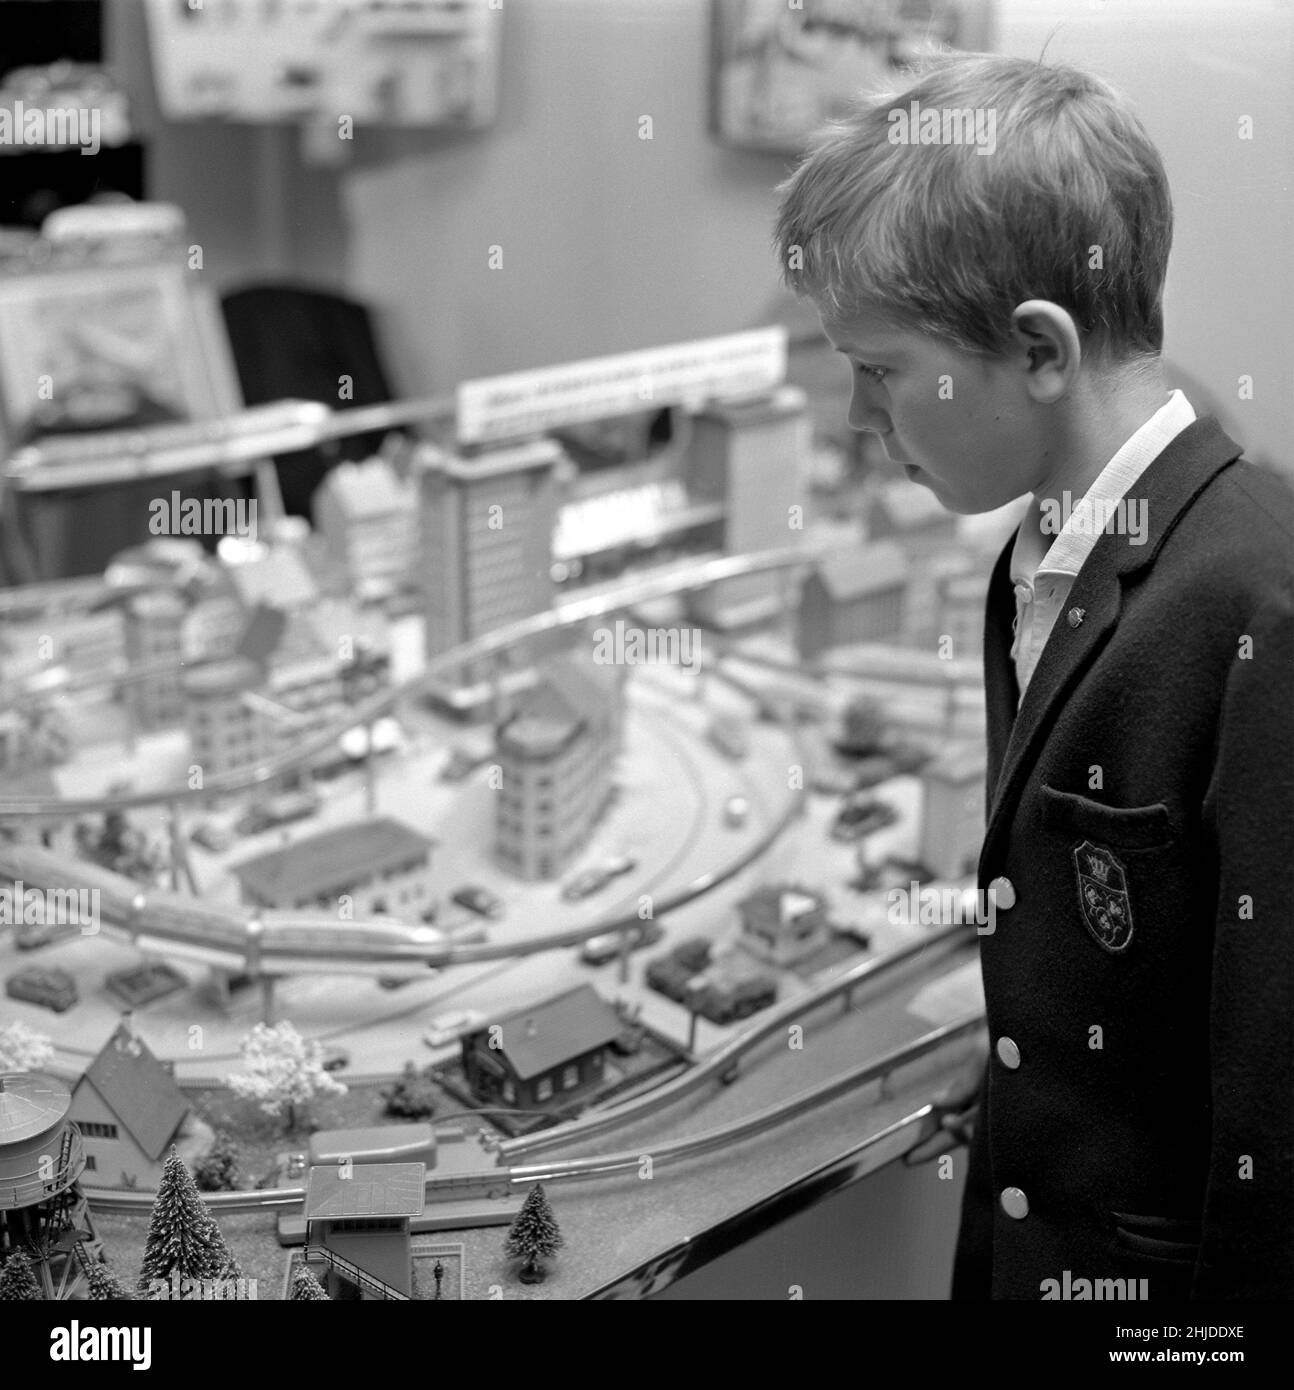 Jouets dans le 1960s.Un garçon à un chemin de fer modèle dans un magasin.Il est construit avec des bâtiments et des arbres et était un passe-temps populaire à l'époque.Les trains modèles sur la photo sont fabriqués par les chemins de fer britanniques Tri-ang.D'autres fabricants célèbres étaient Märklin et Fleischmann.Suède 1962 Banque D'Images